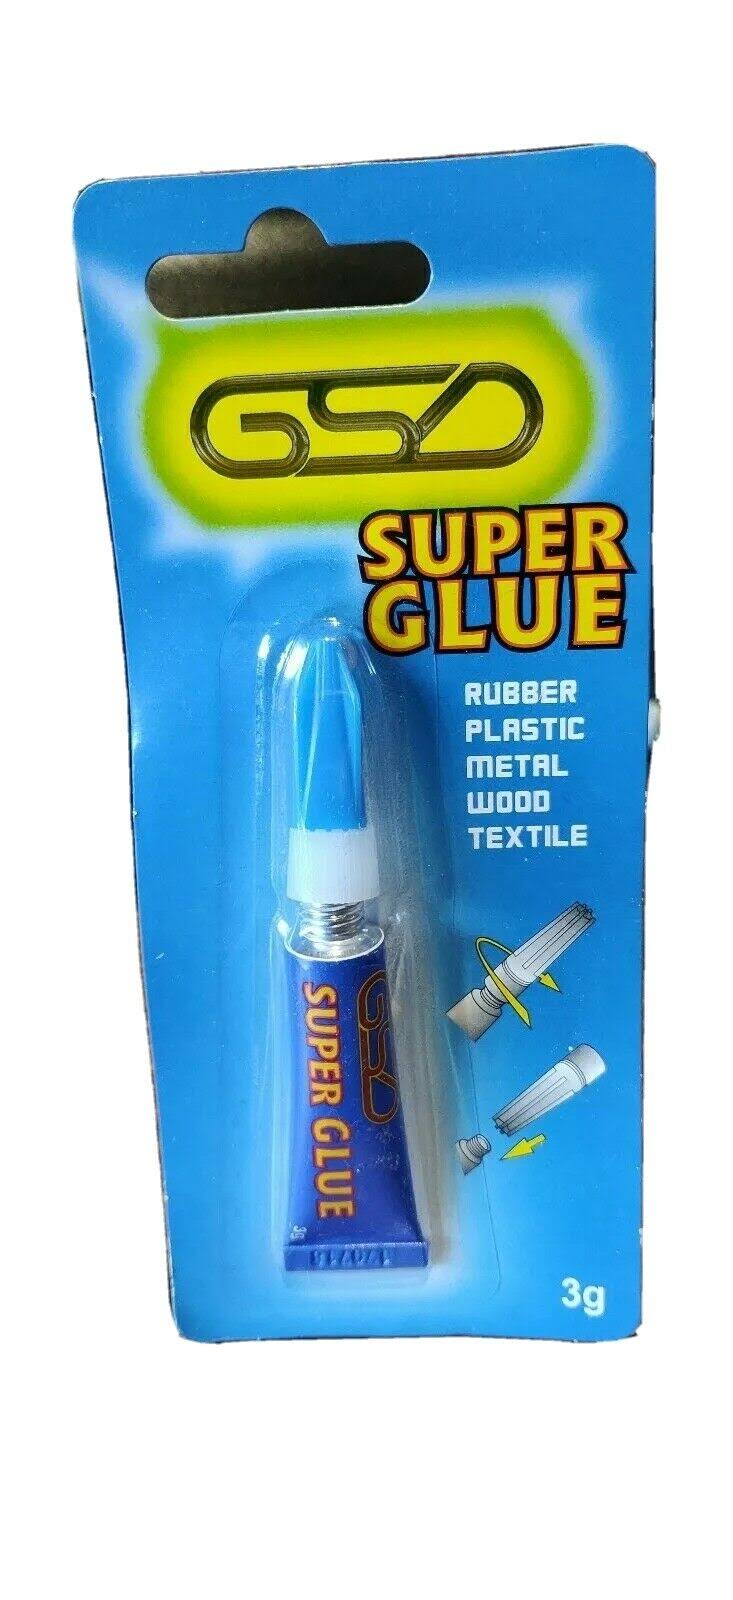 GSD Super Glue 3G